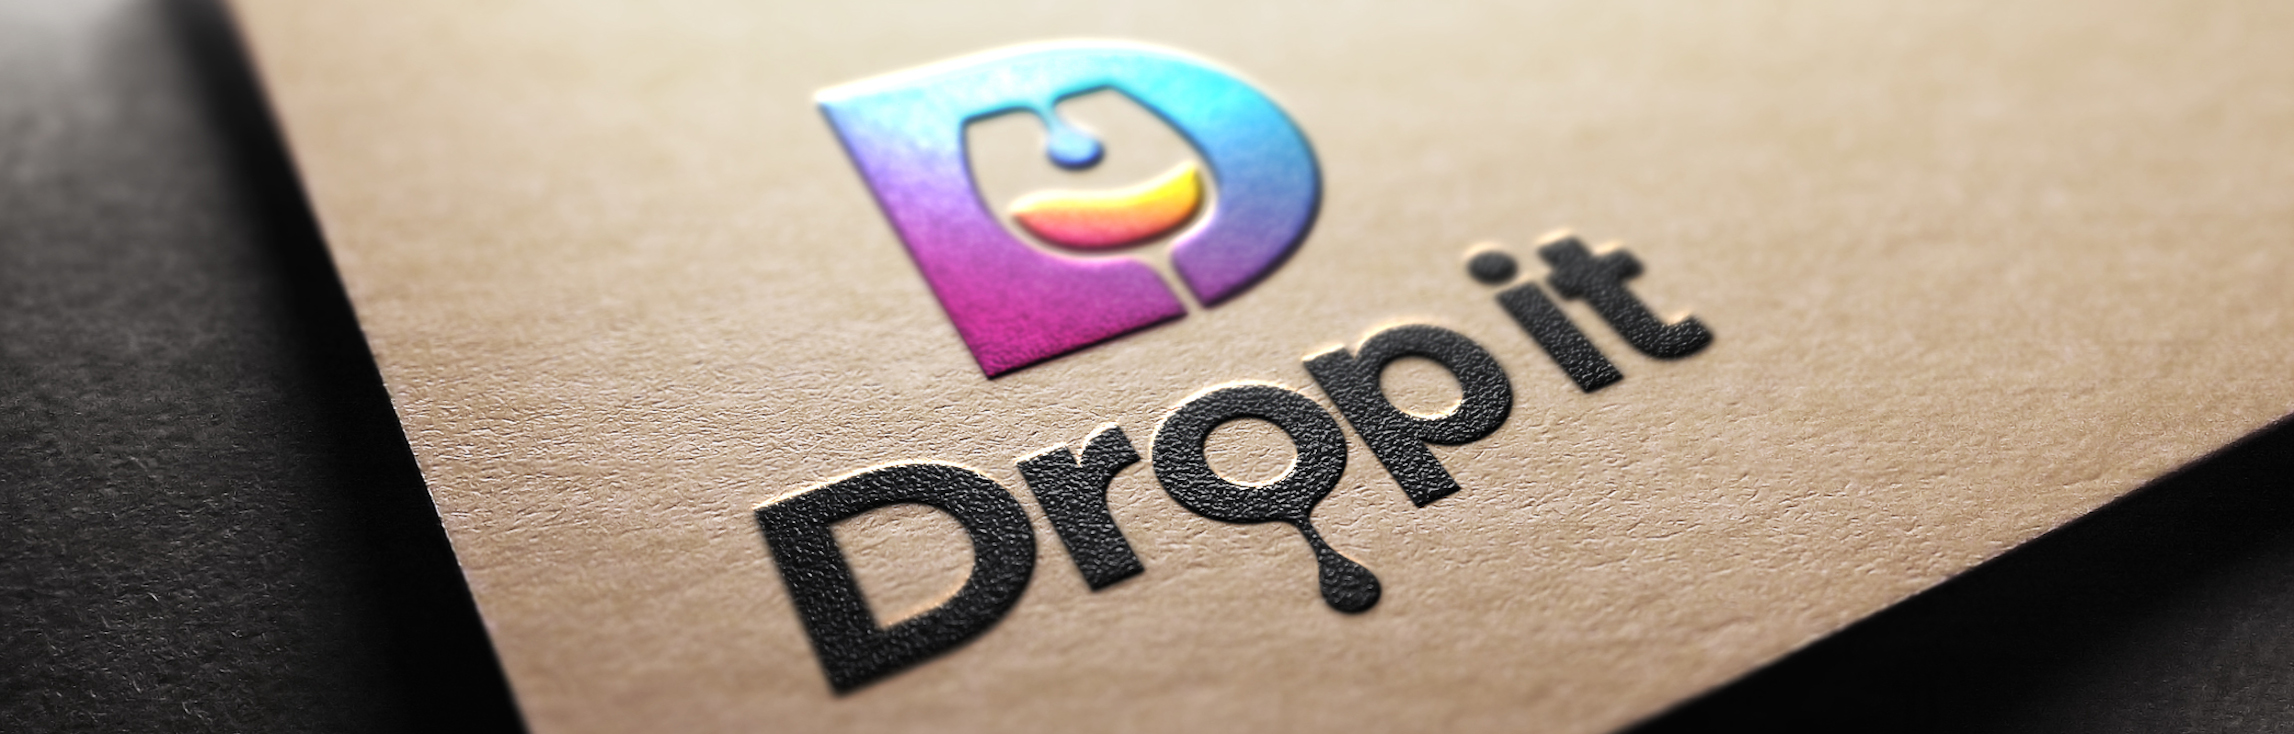 https://www.drop-it.at/en/wp-content/uploads/sites/2/2020/06/Drop-It-Logo_paper-board_hp.jpg